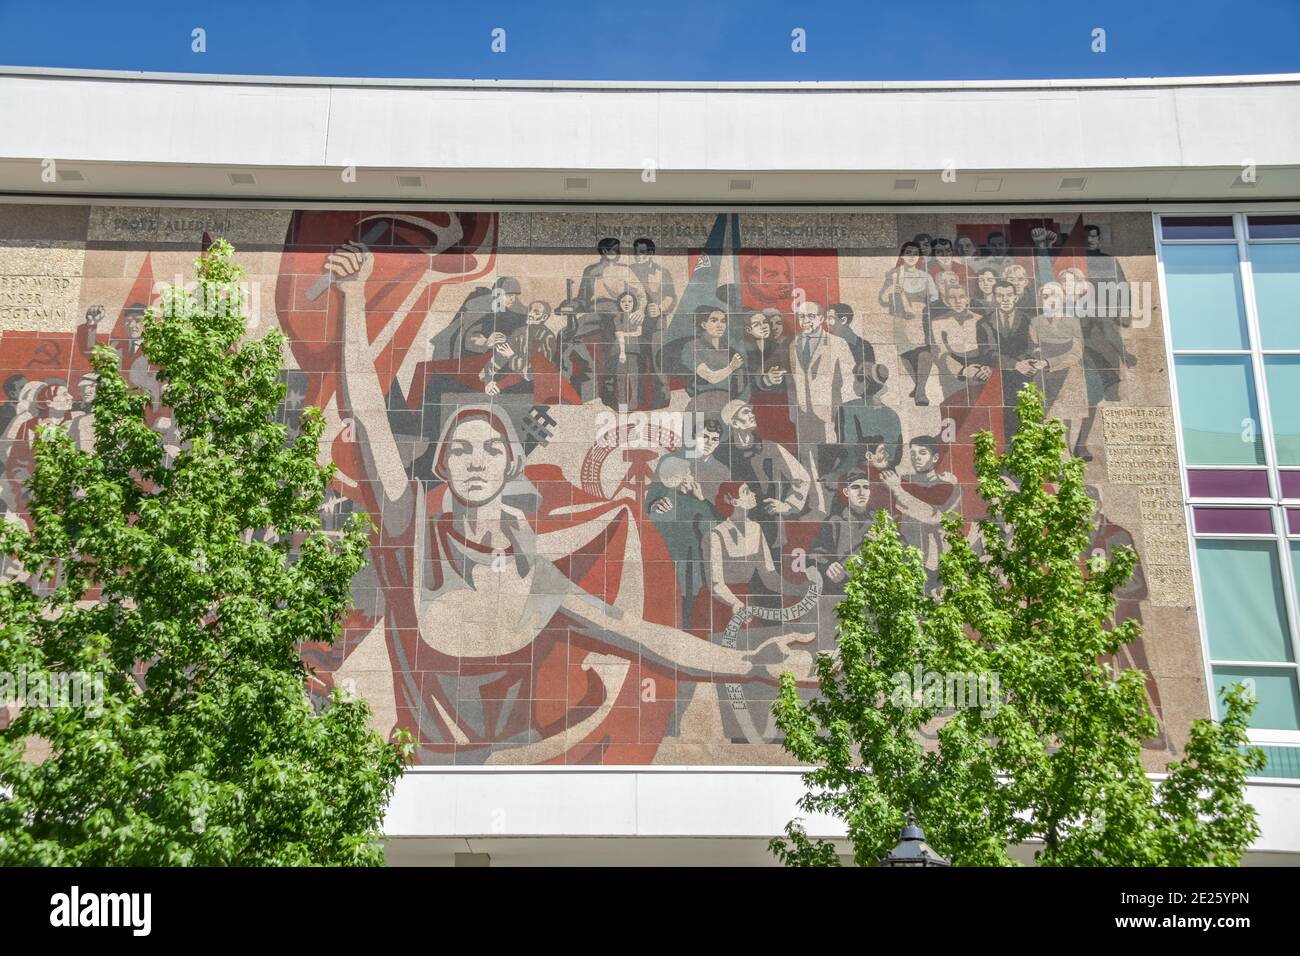 Wandbild 'der Weg der roten Fahne', Kulturpalast, Schloßstraße, Dresda, Sachsen, Deutschland Foto Stock